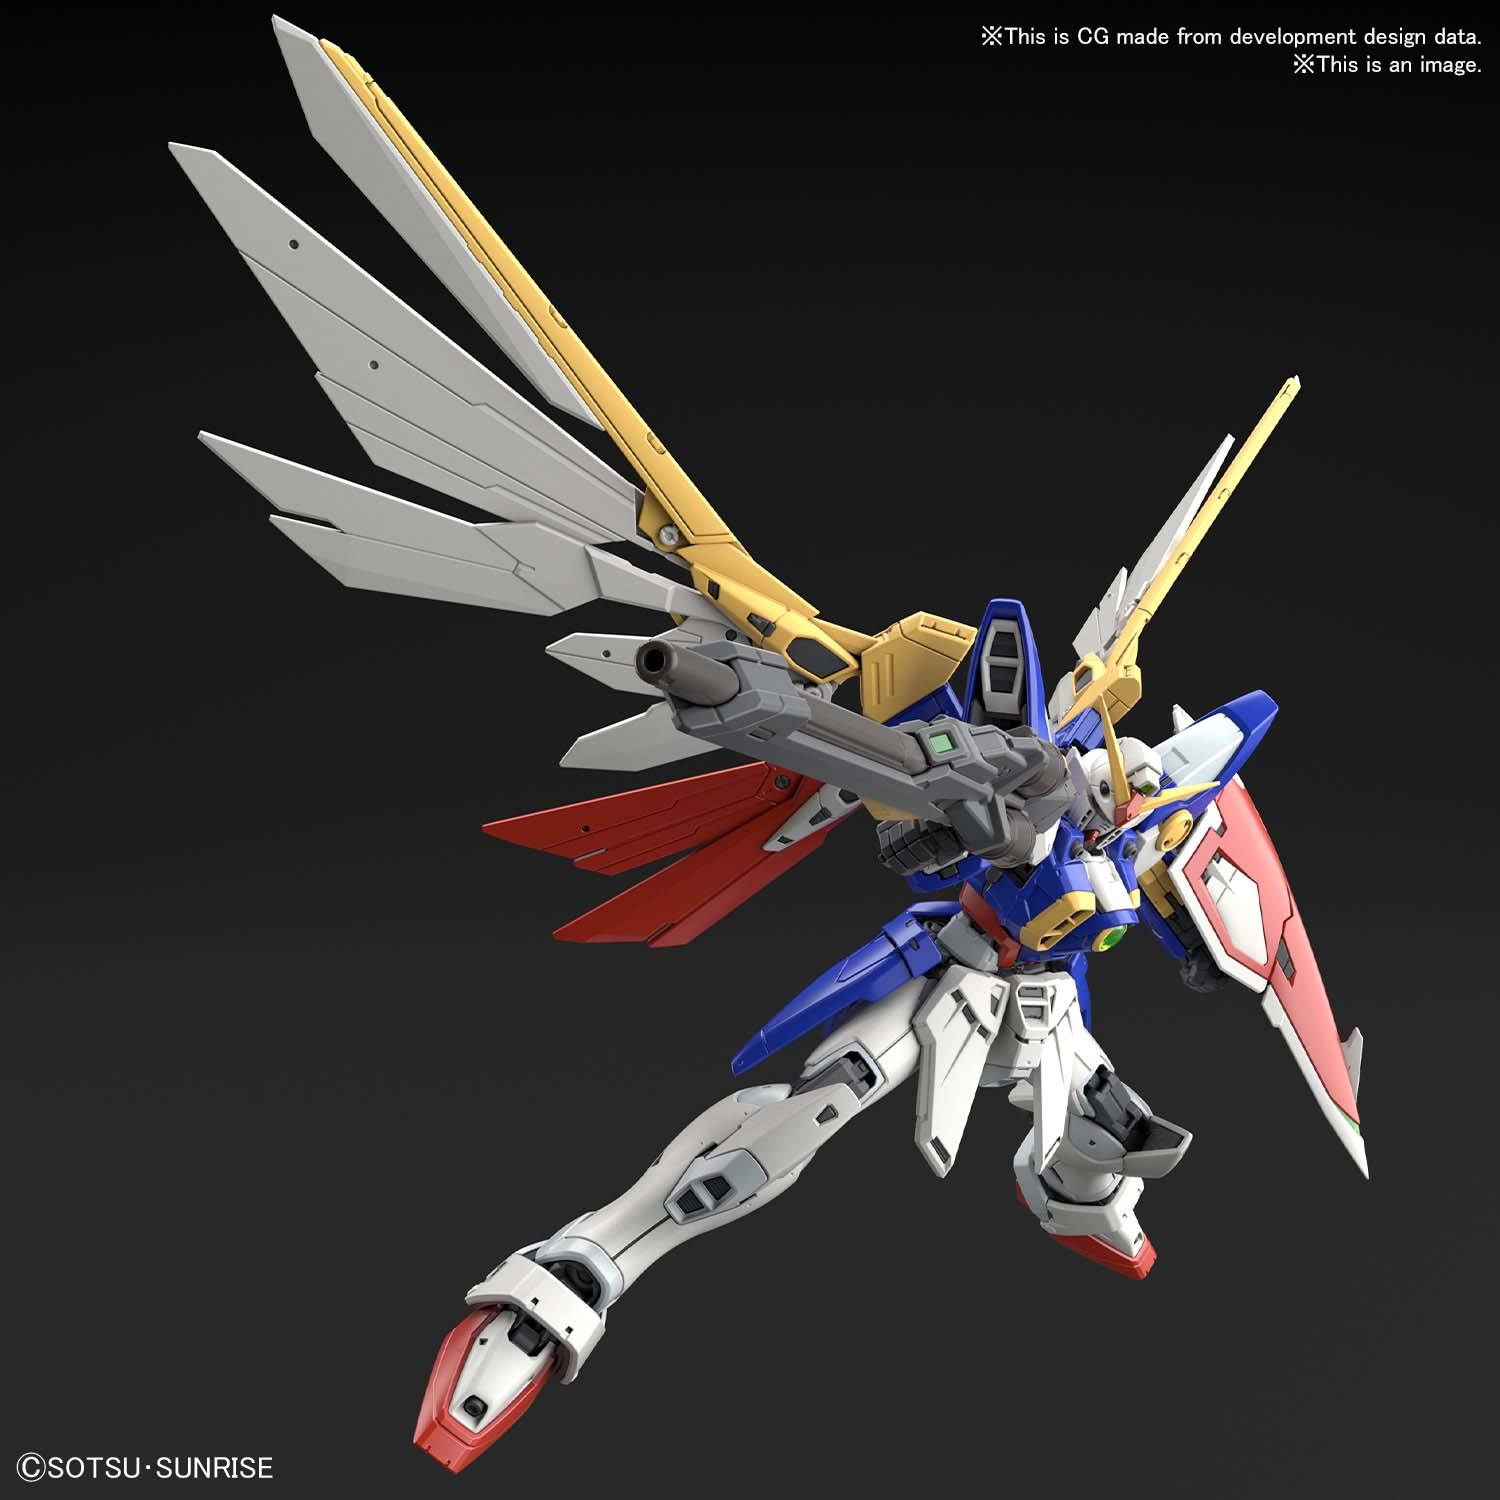 RG Wing Gundam 1/144